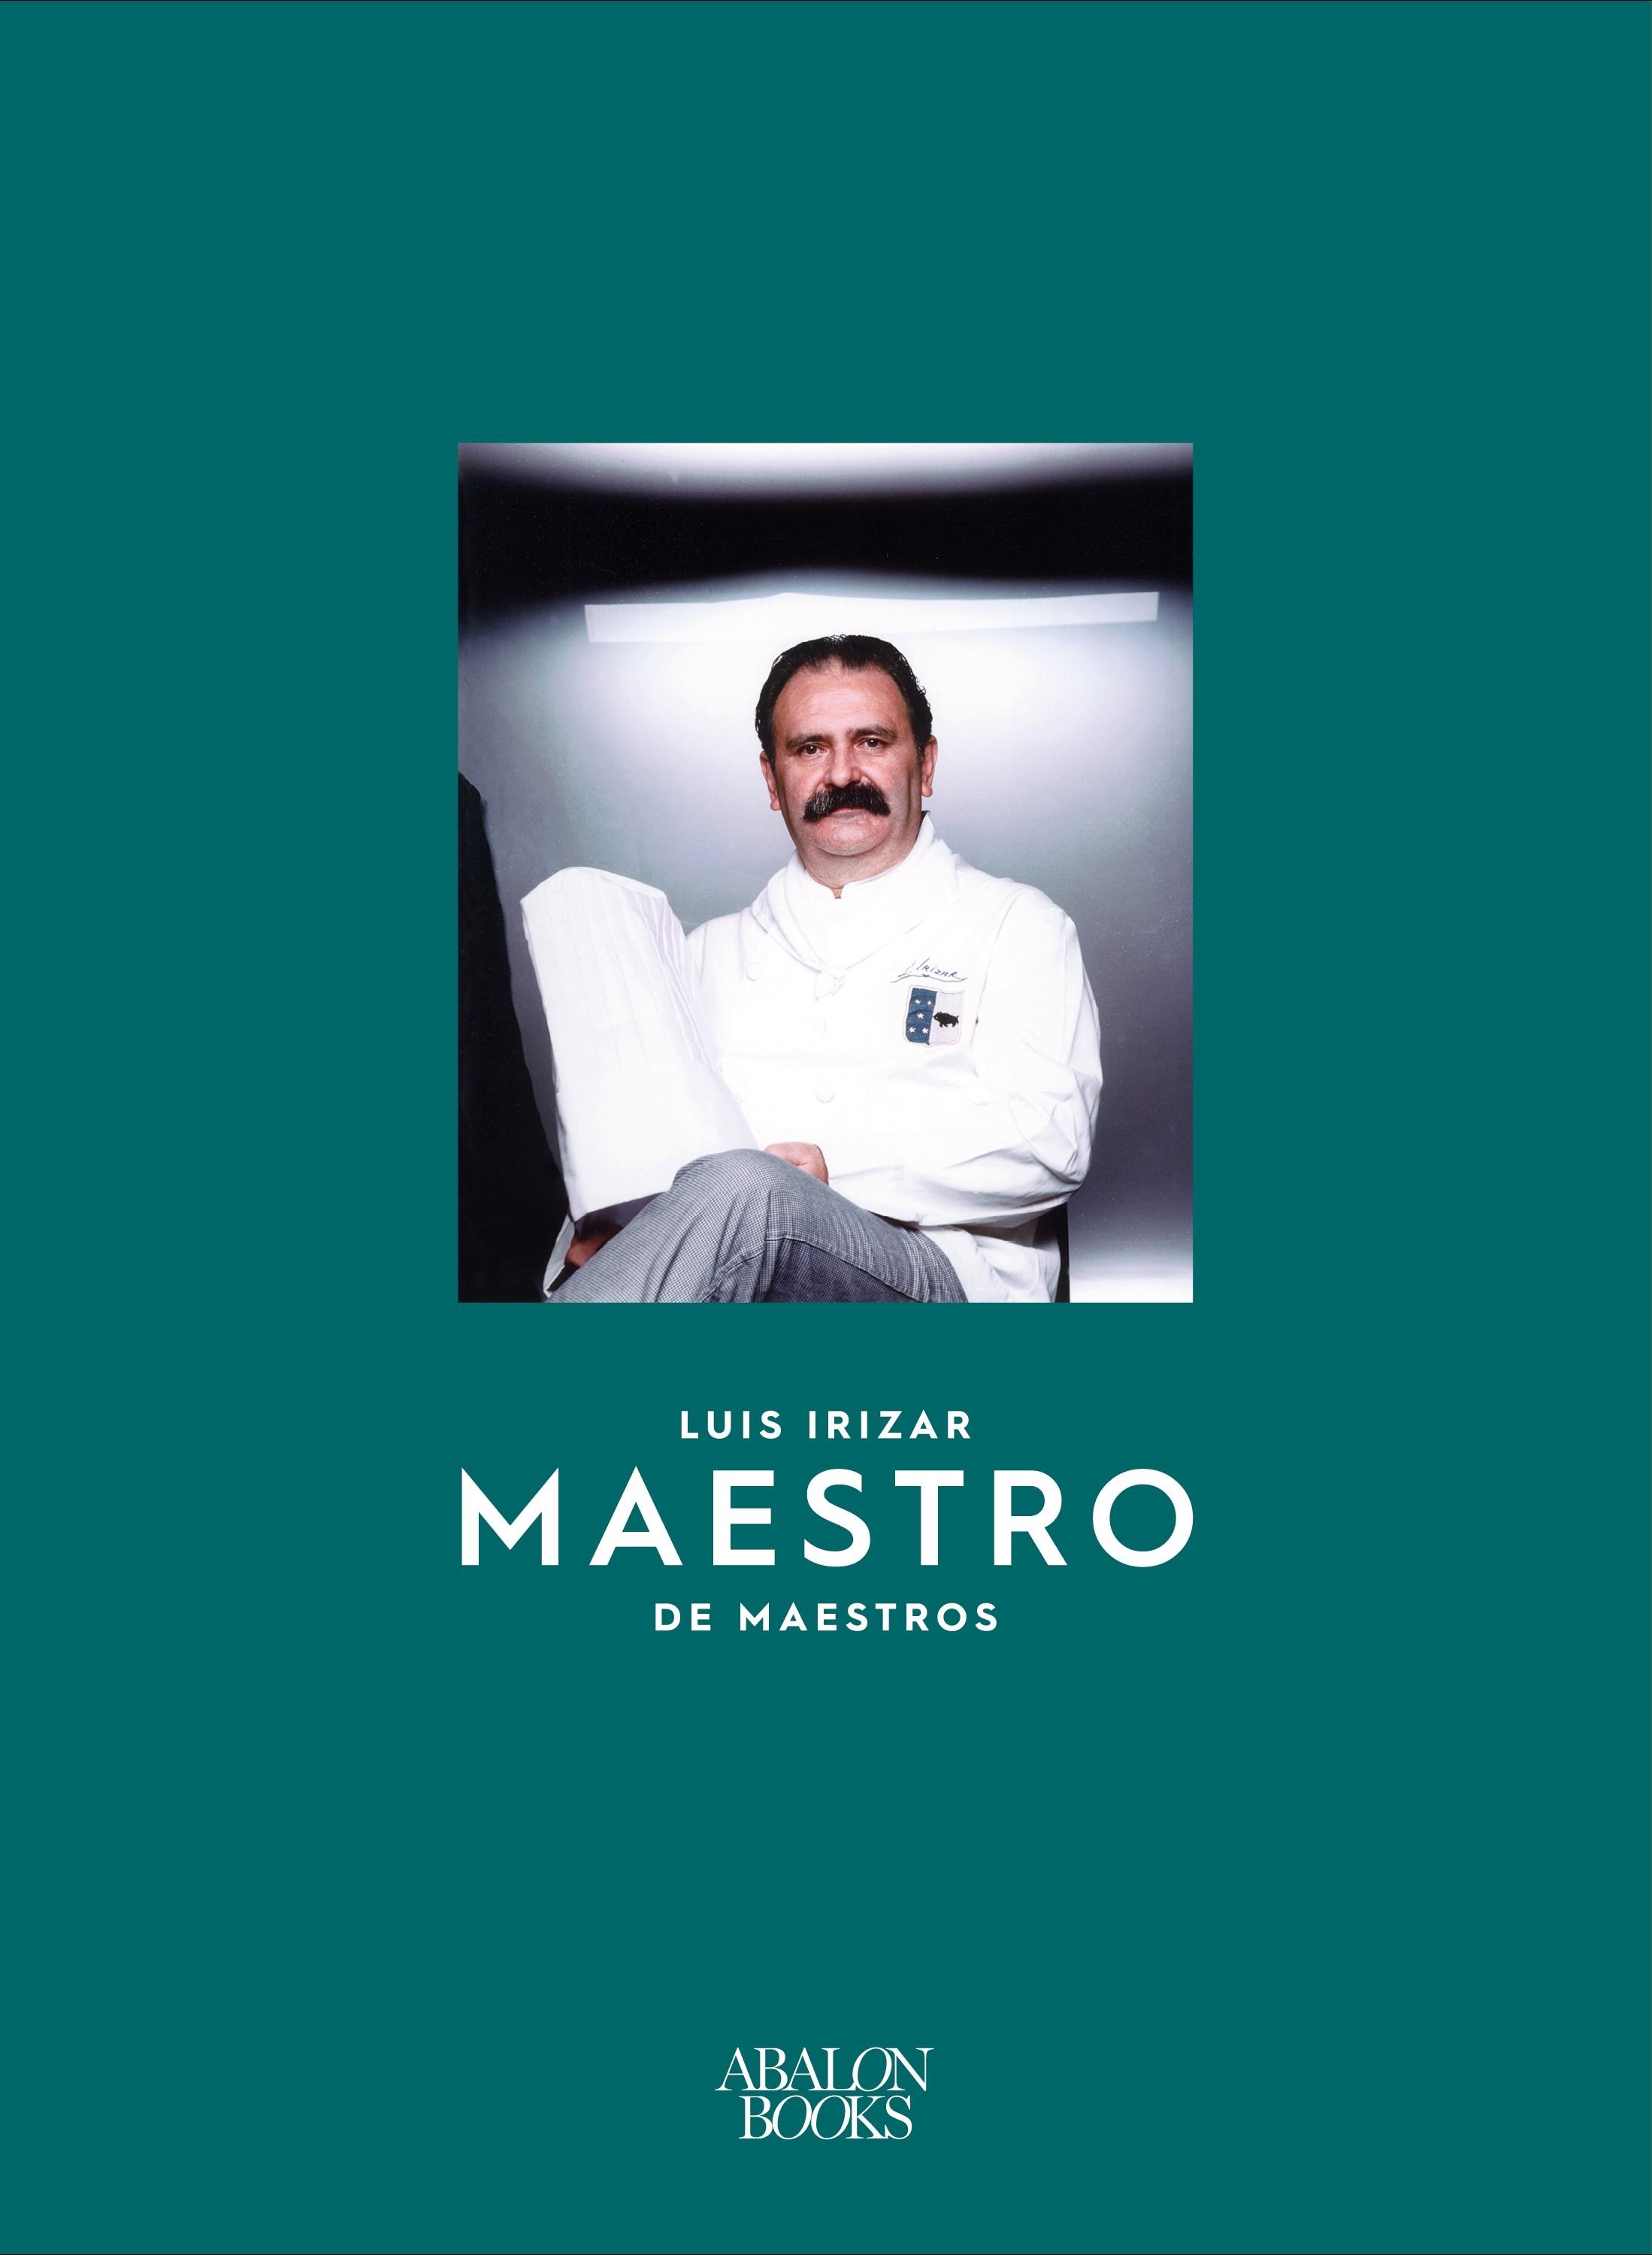 Luis Irizar "Maestro de Maestros"